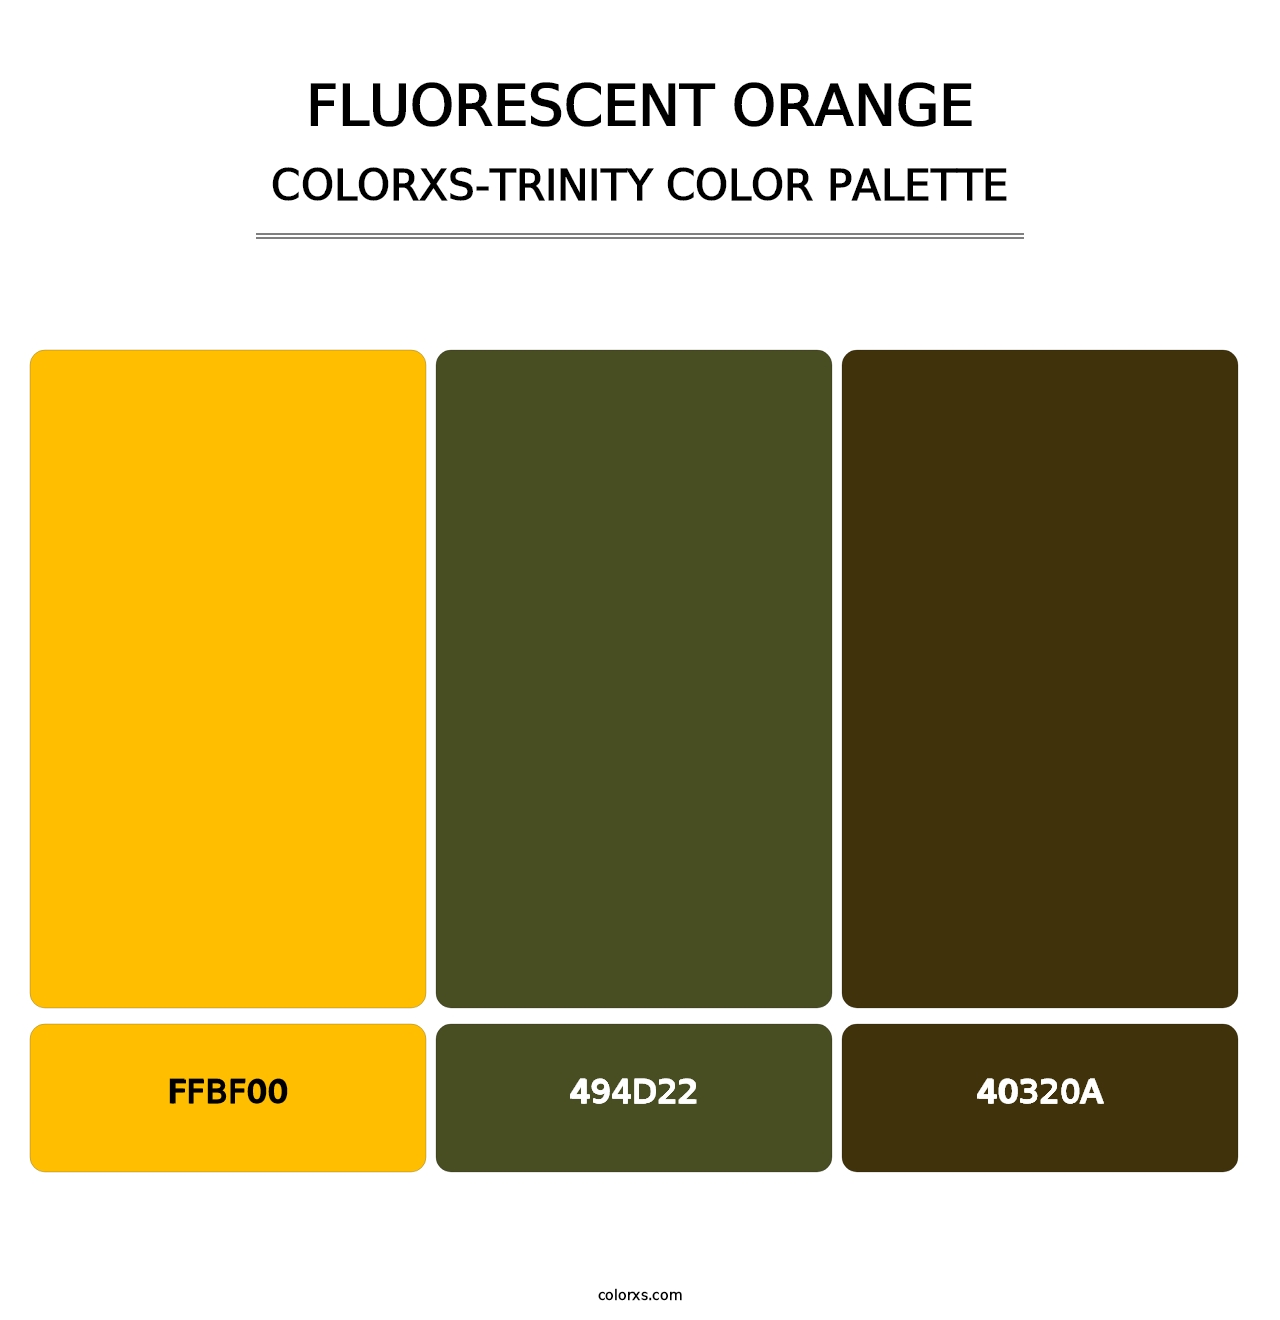 Fluorescent Orange - Colorxs Trinity Palette